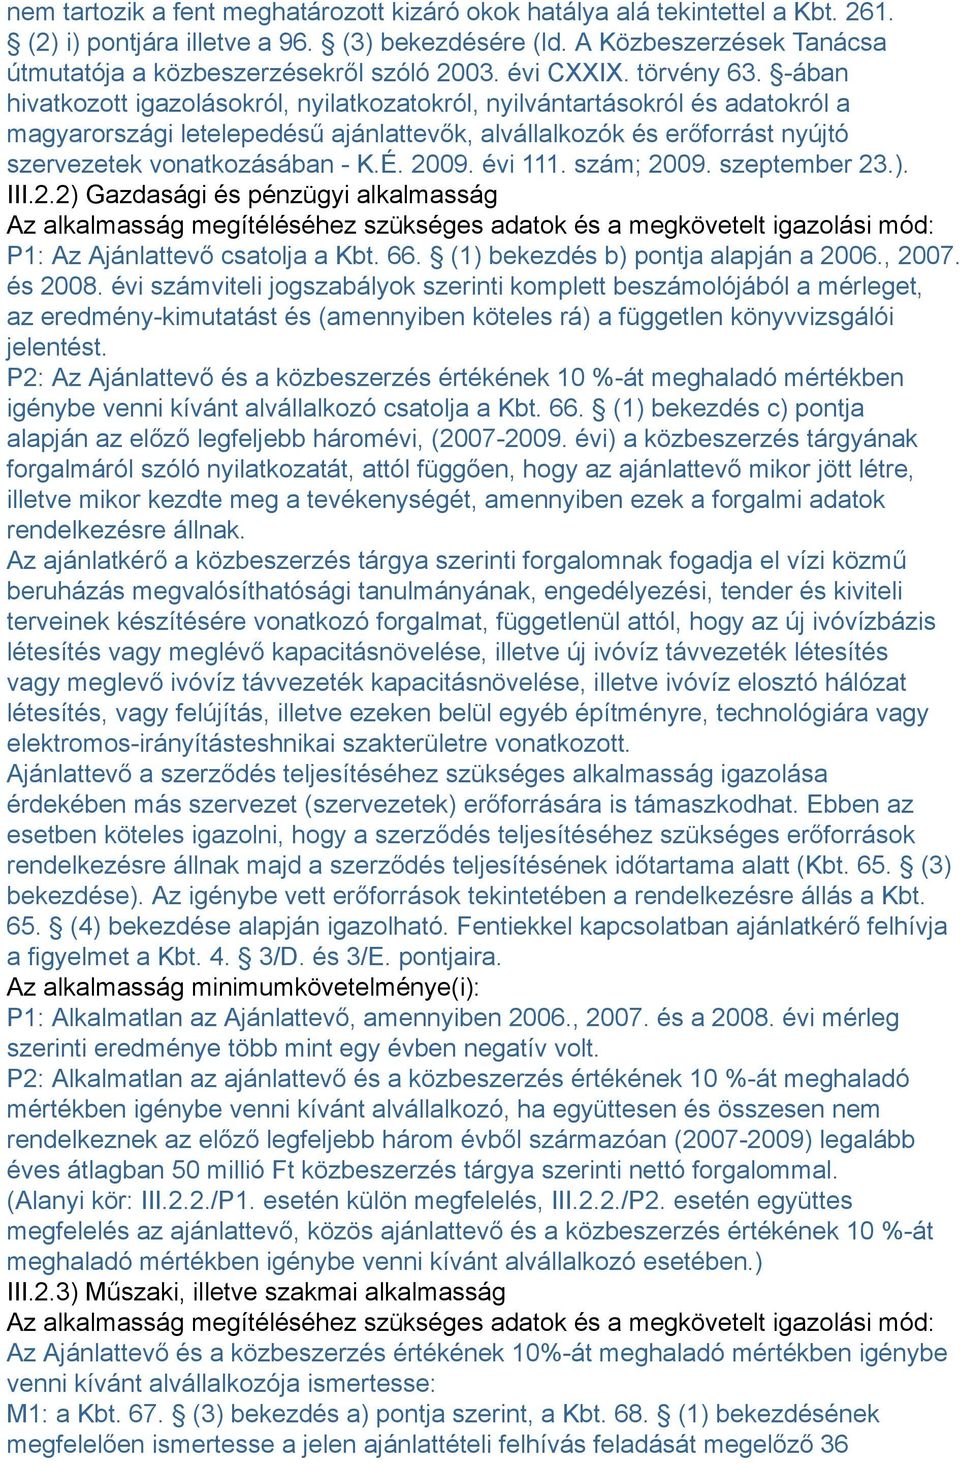 -ában hivatkozott igazolásokról, nyilatkozatokról, nyilvántartásokról és adatokról a magyarországi letelepedésű ajánlattevők, alvállalkozók és erőforrást nyújtó szervezetek vonatkozásában - K.É. 2009.